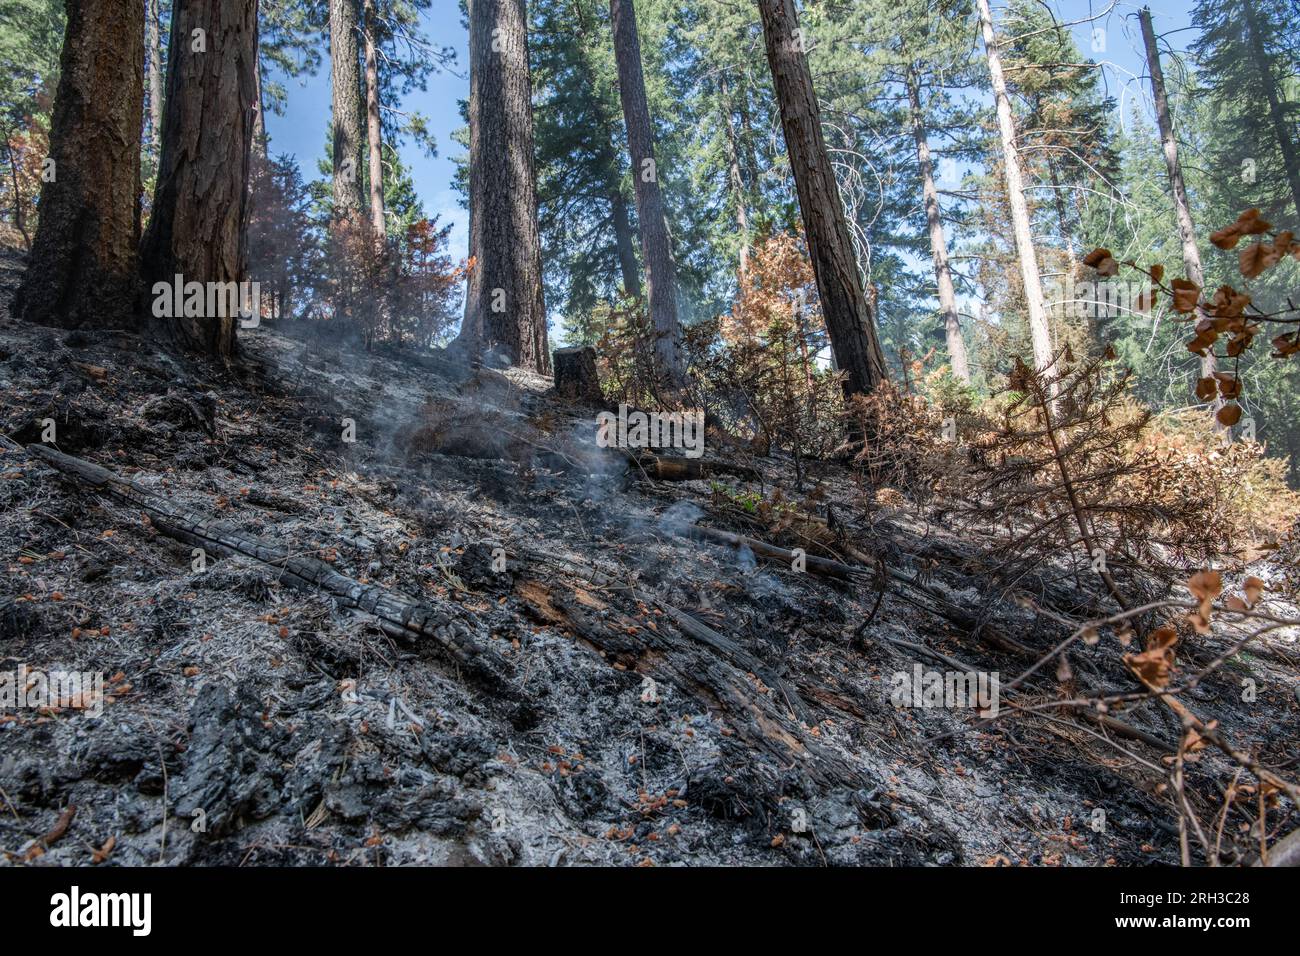 Forêt nationale Stanislaus dans la Sierra Nevada en Californie, un feu de forêt brûlant à travers le sol de la forêt. La brûlure laisse derrière elle des cendres carbonisées. Banque D'Images